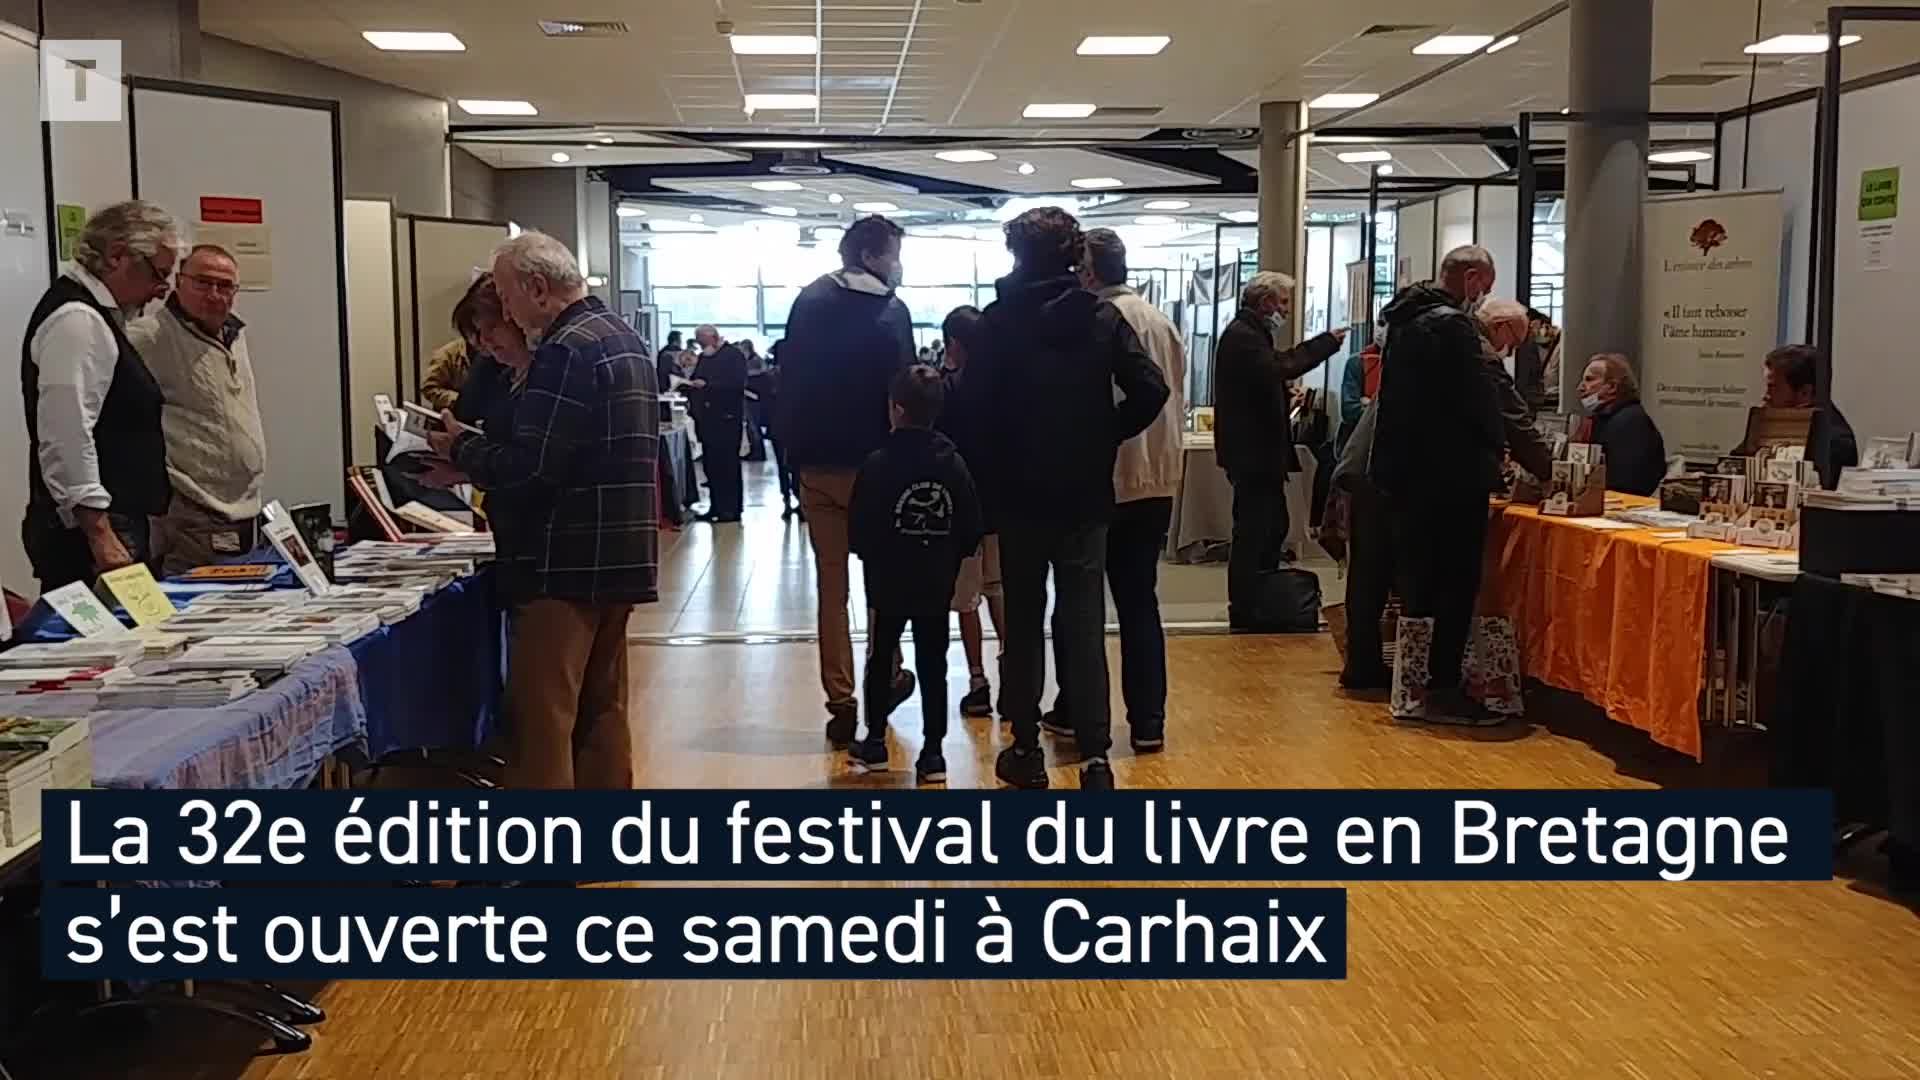 Le festival du livre en Bretagne de retour à Carhaix (Le Télégramme)